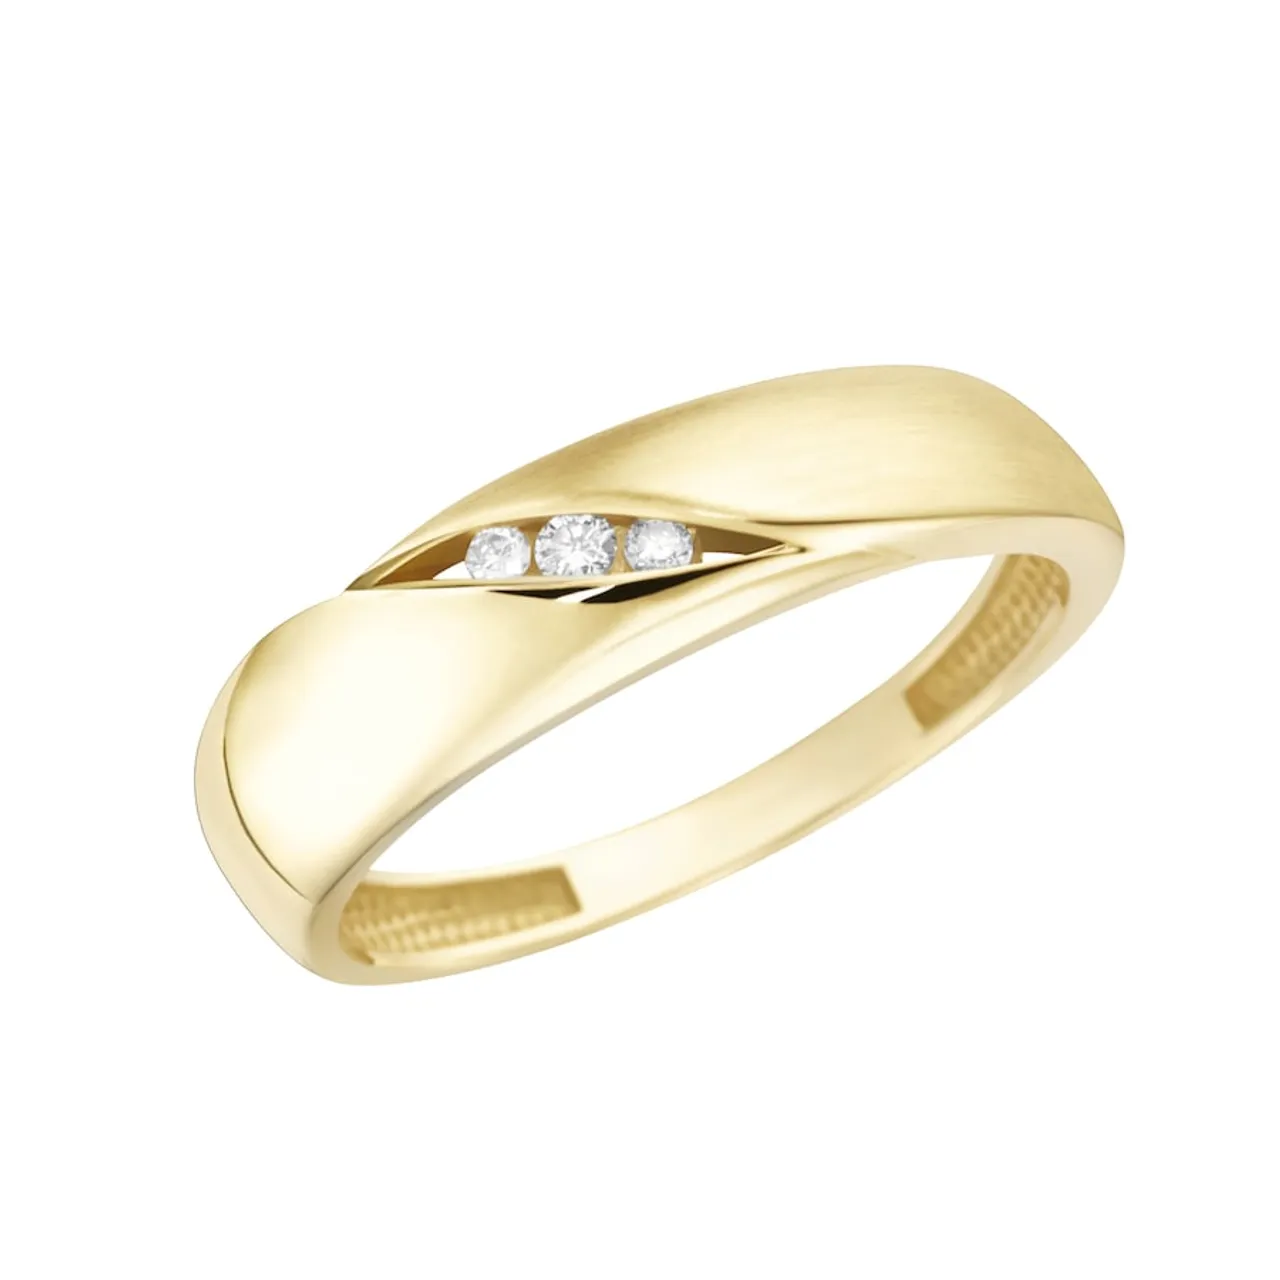 Luigi Merano - Ring matt, glanz, mit funkelnden Brillanten, Gold 585 Ringe Gold Damen